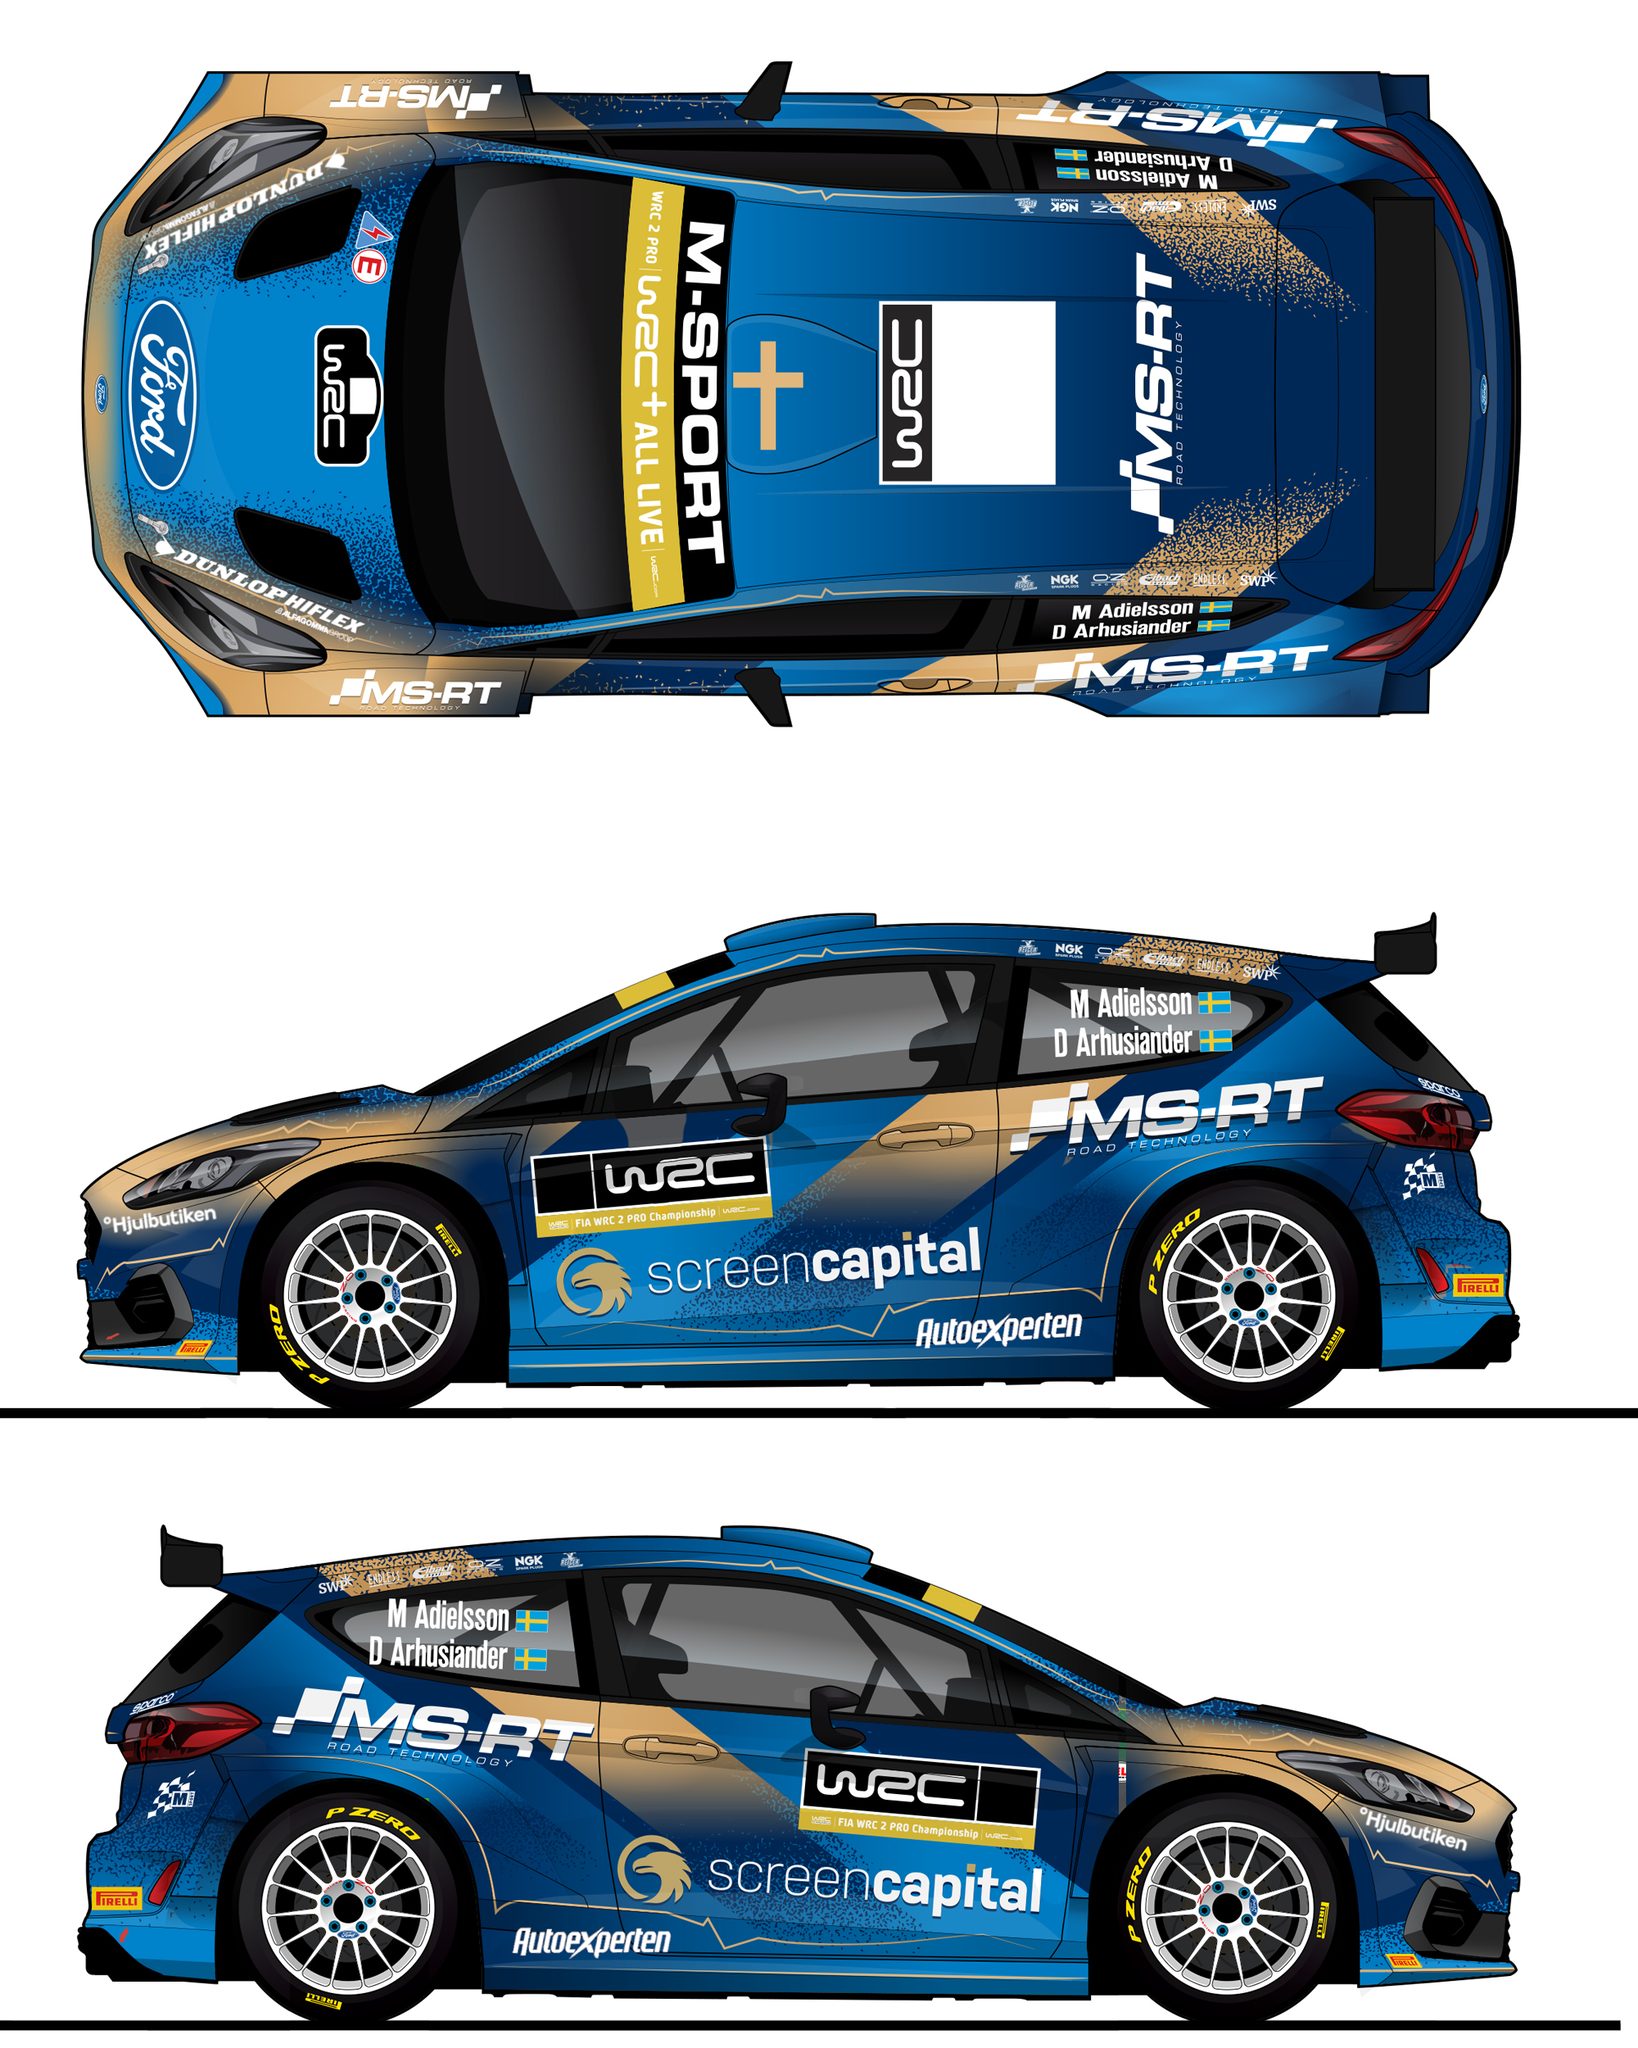 Huttunen és Adielsson az M-Sport Rally2-es pilótái